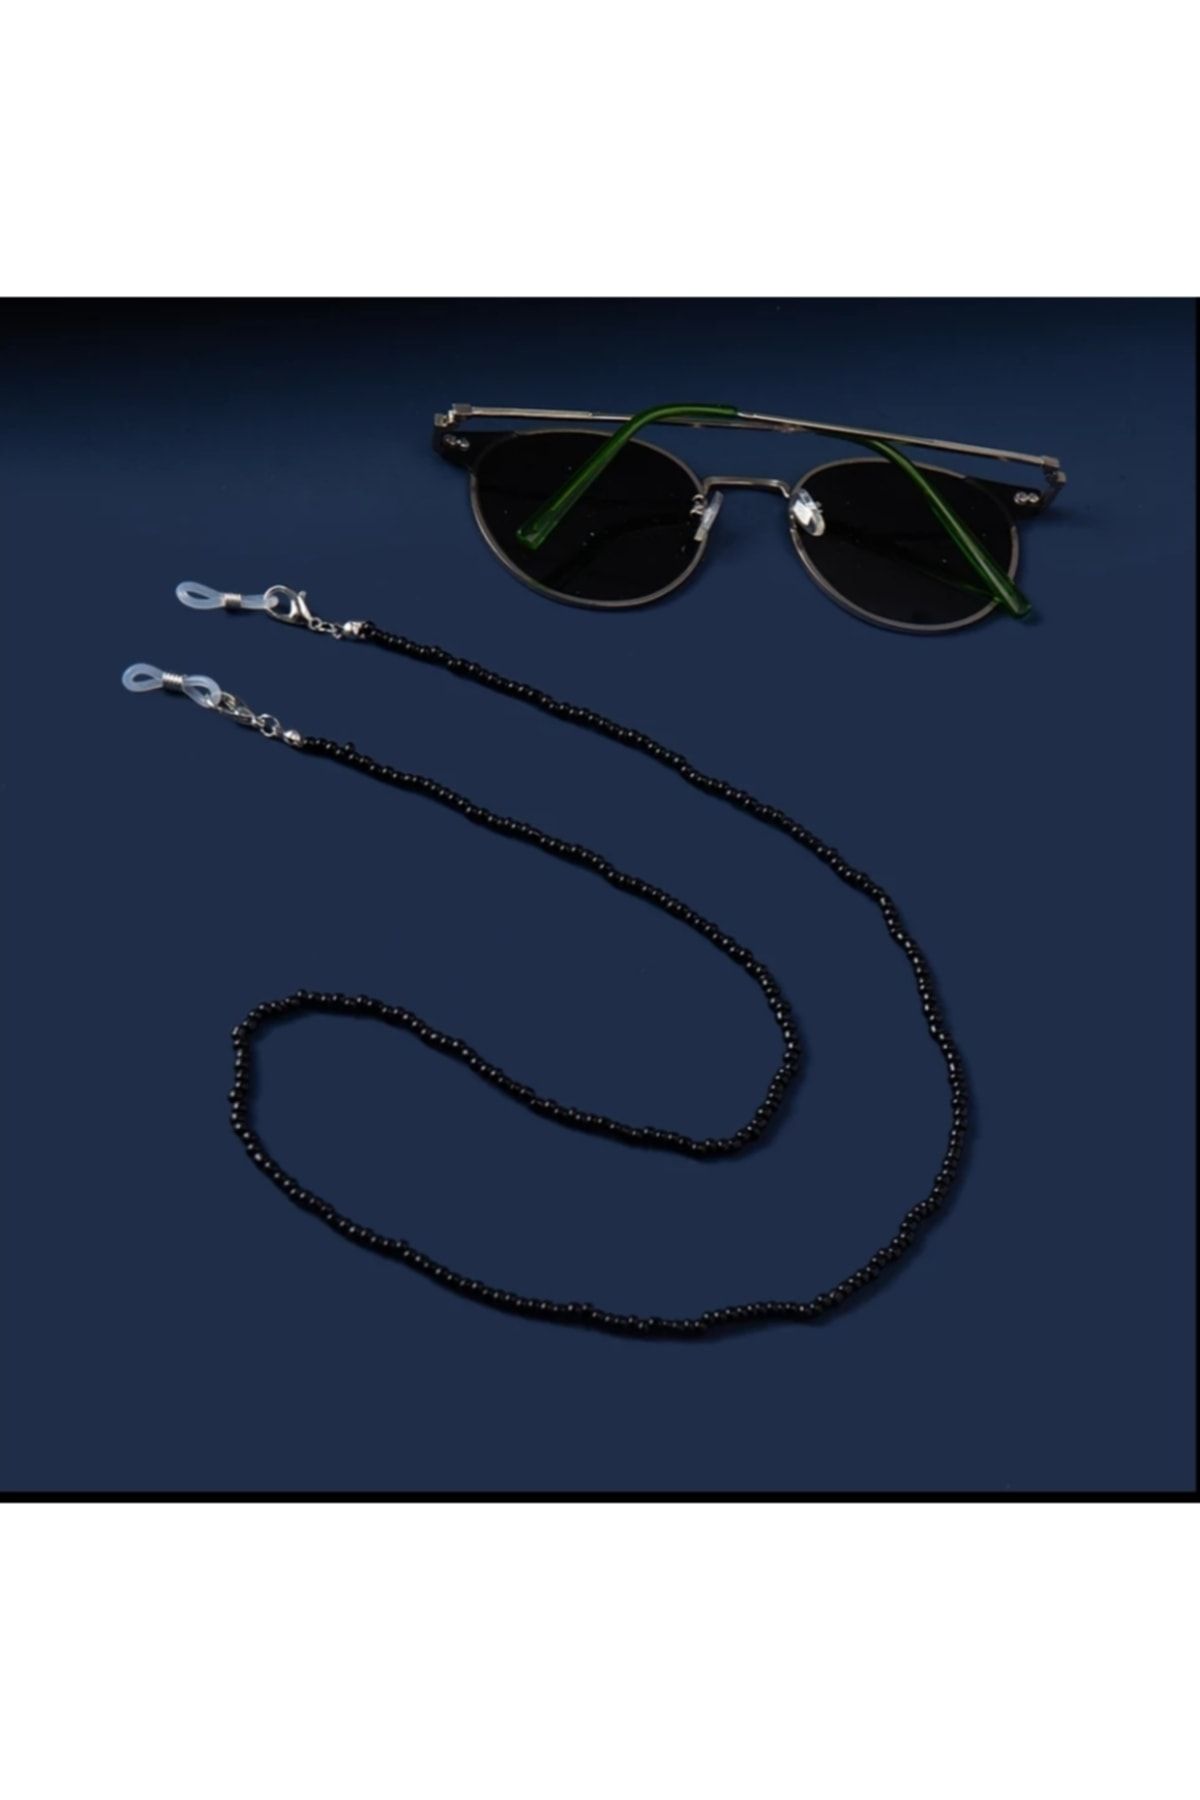 platin hediyelik Boncuklu Güneş Gözlüğü Zinciri Gözlük Ipi Askısı Aksesuarı